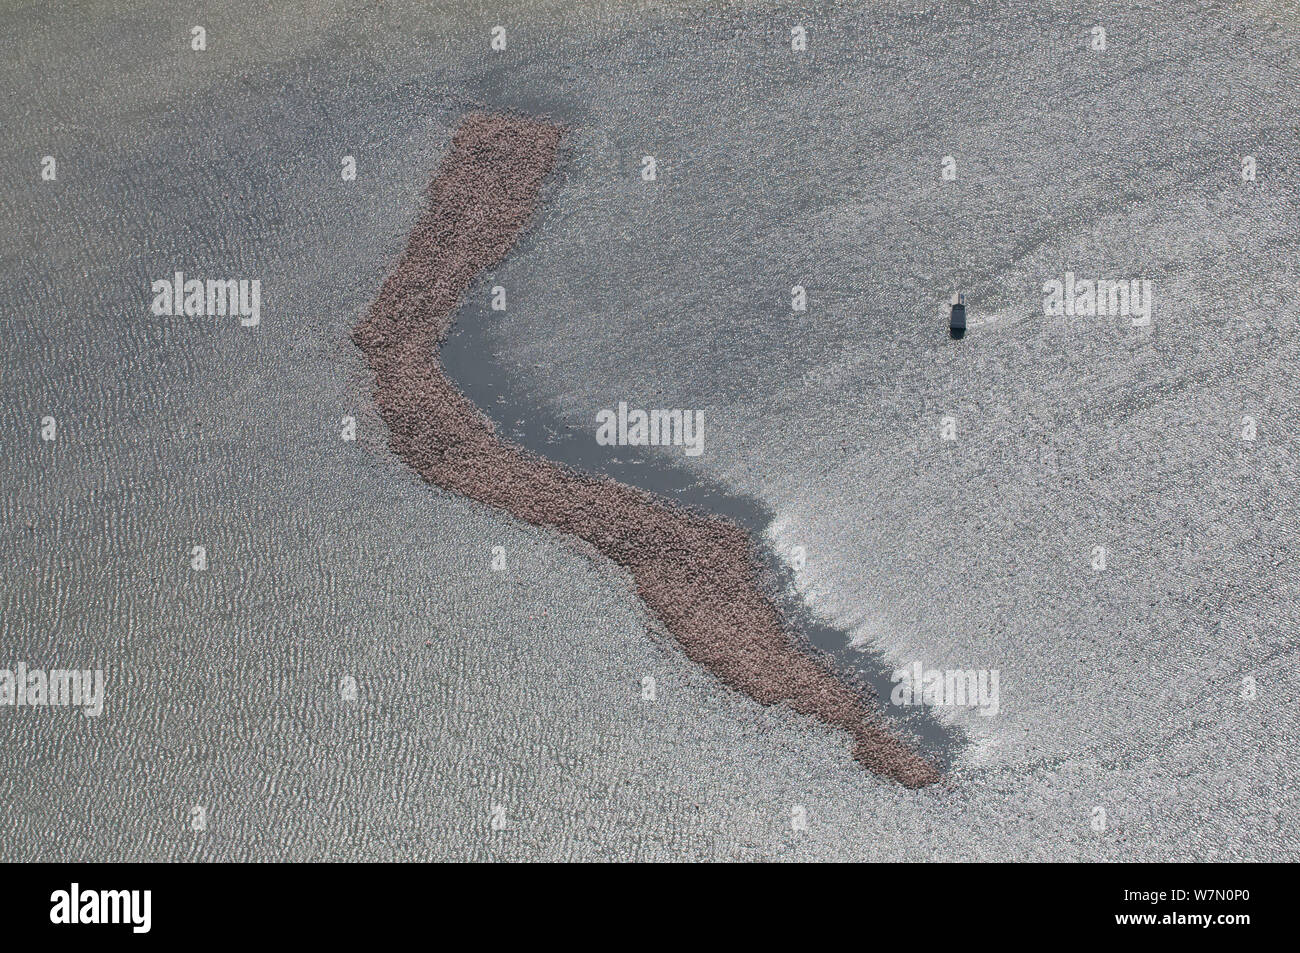 Luftaufnahme der kleine Insel mit Kolonie mehr Flamingo (Phoenicopterus ruber), die einzige Brutkolonie in Frankreich, beachten Sie Wissenschaftliche Informationsstelle auf der rechten, Camargue, Südfrankreich, Mai 2010 Stockfoto